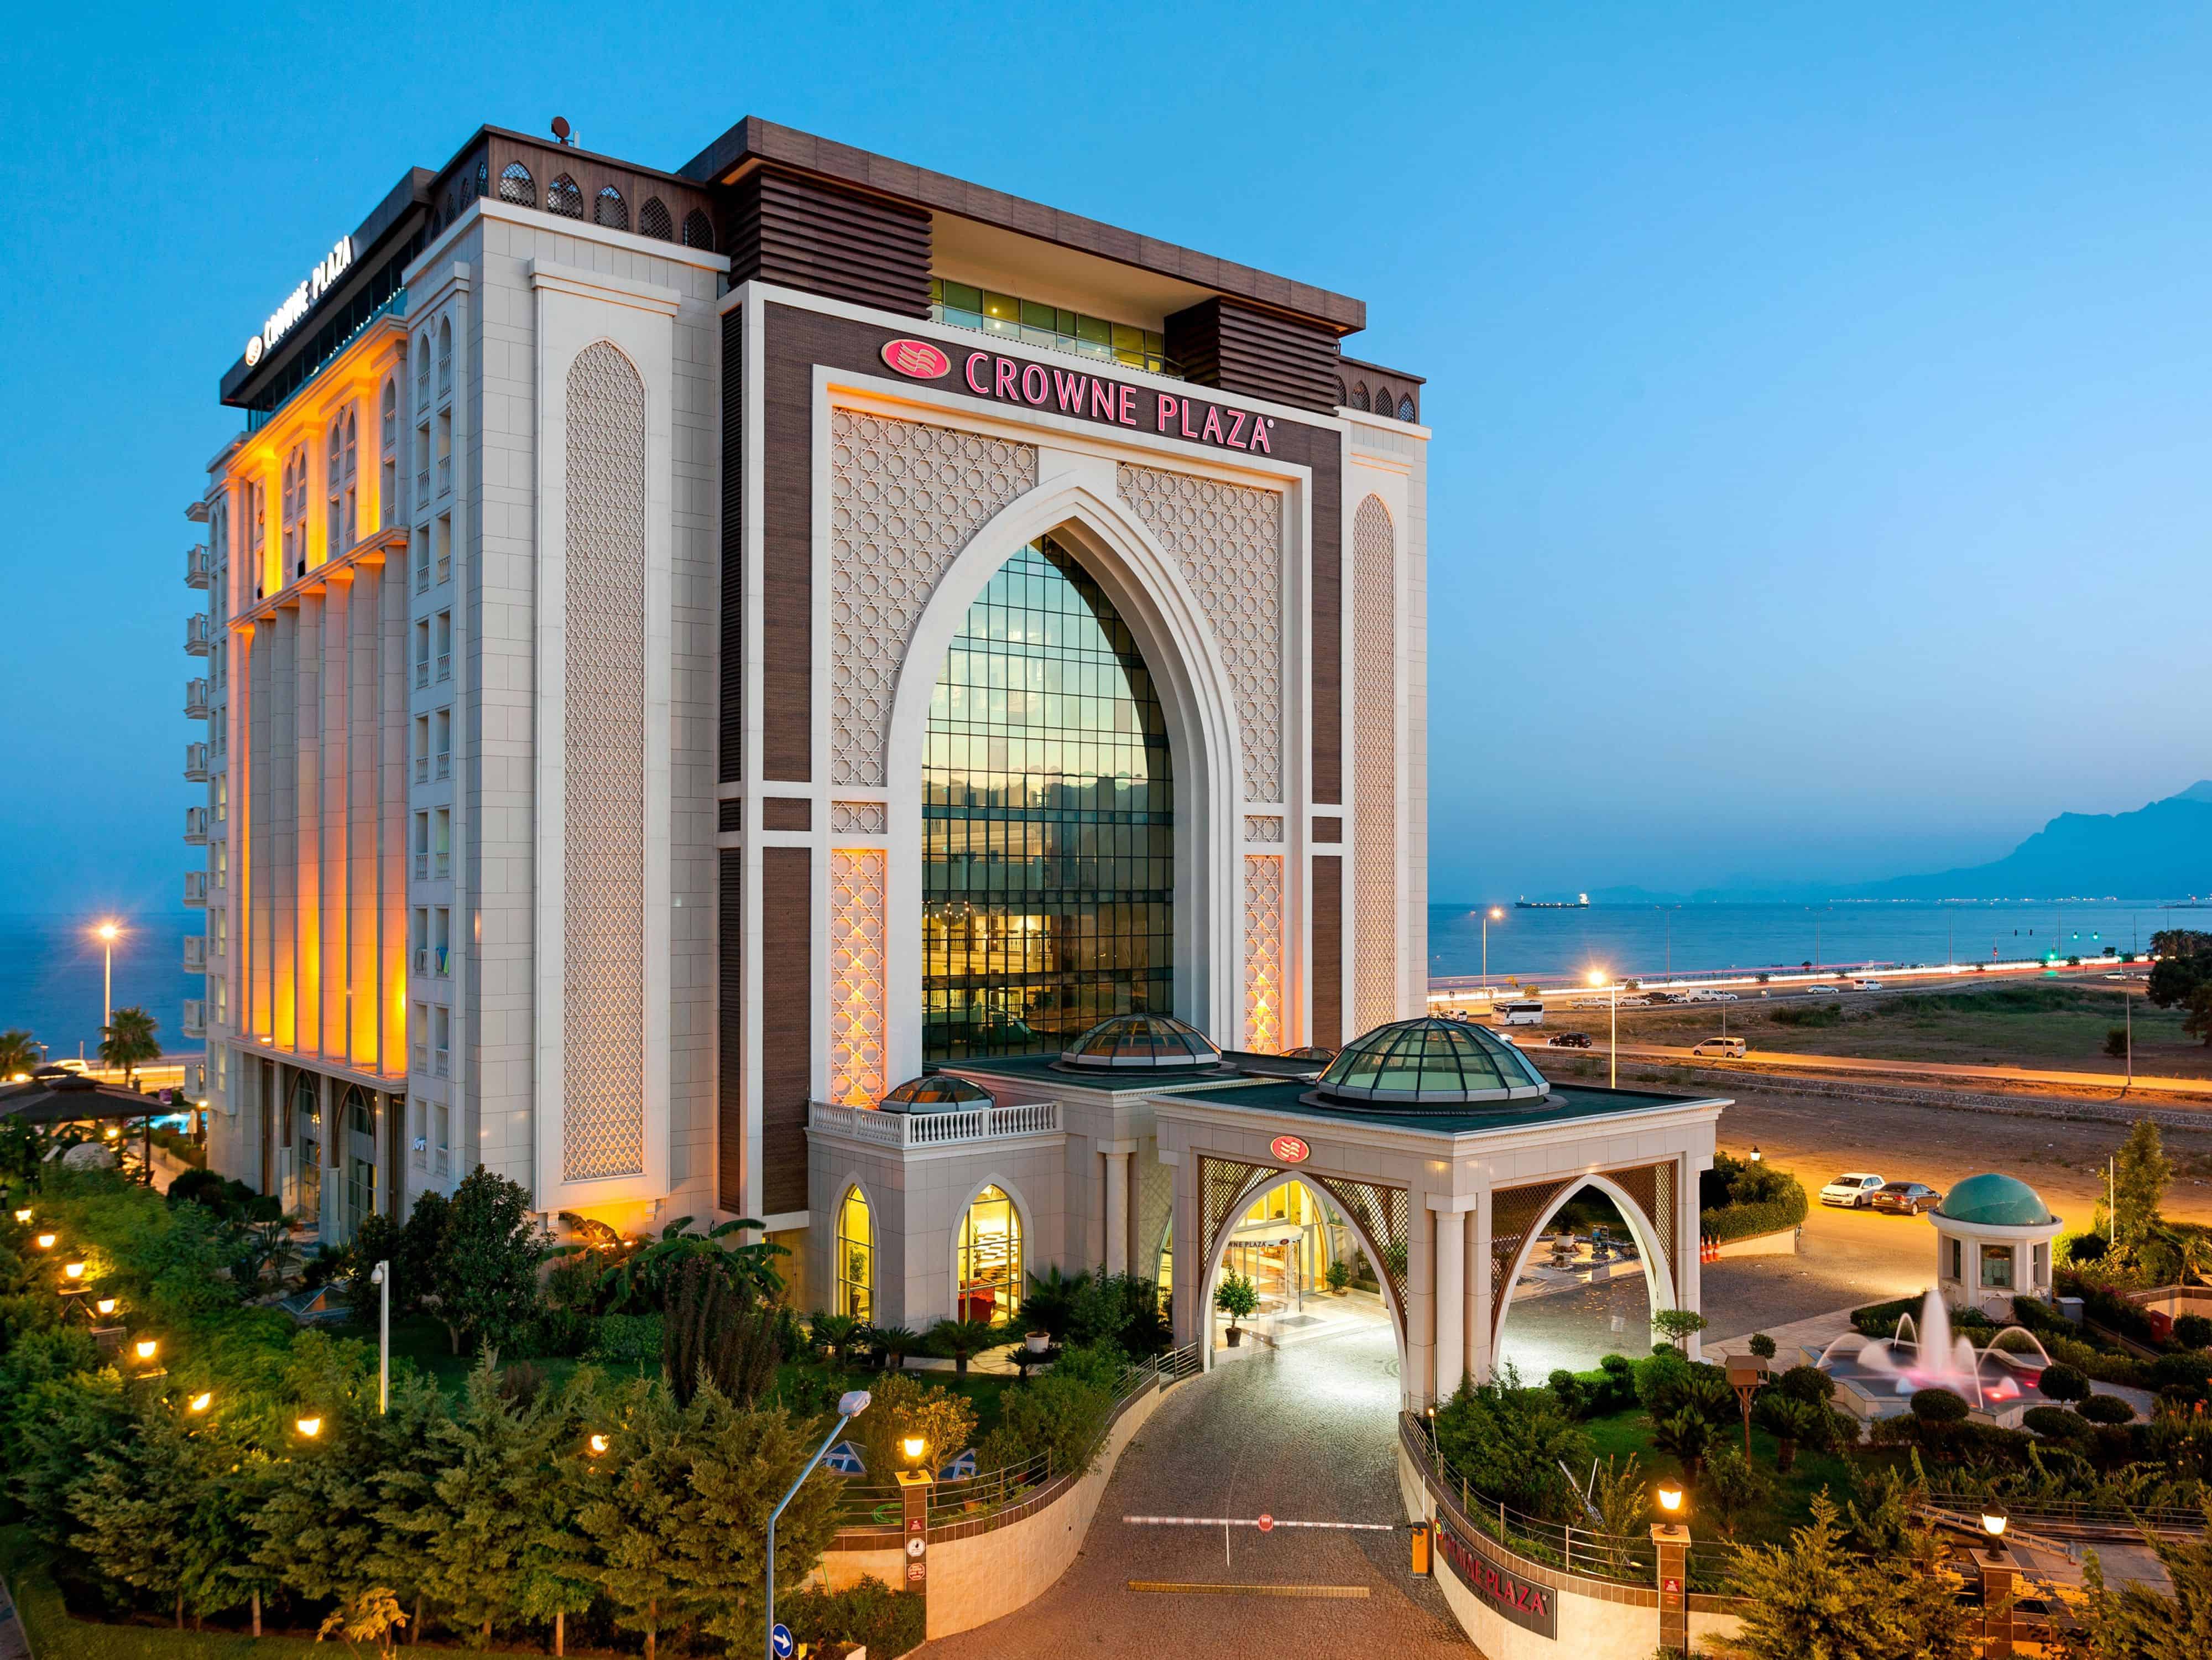 فندق كراون بلازا انطاليا تقرير عن اشهر الفنادق في تركيا